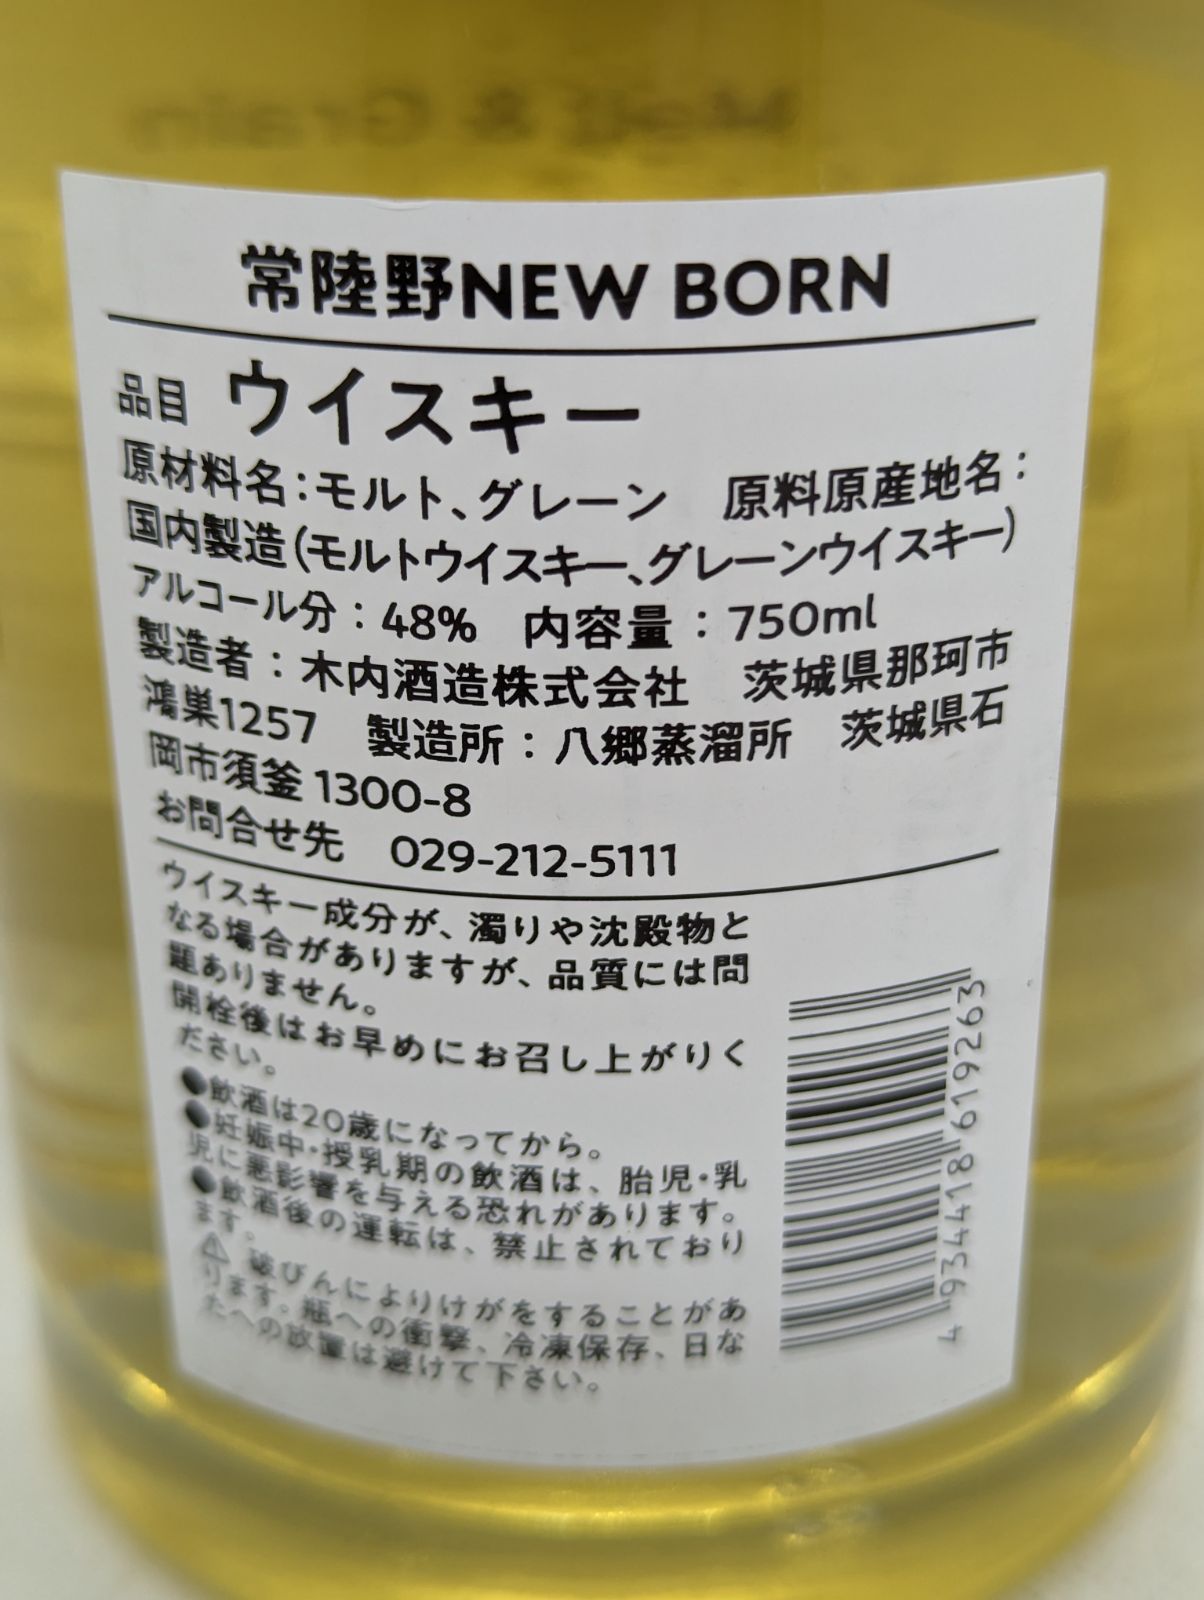 Hitachino New Born Malt & Grain Blended Whisky Bourbon & Sherry Casks